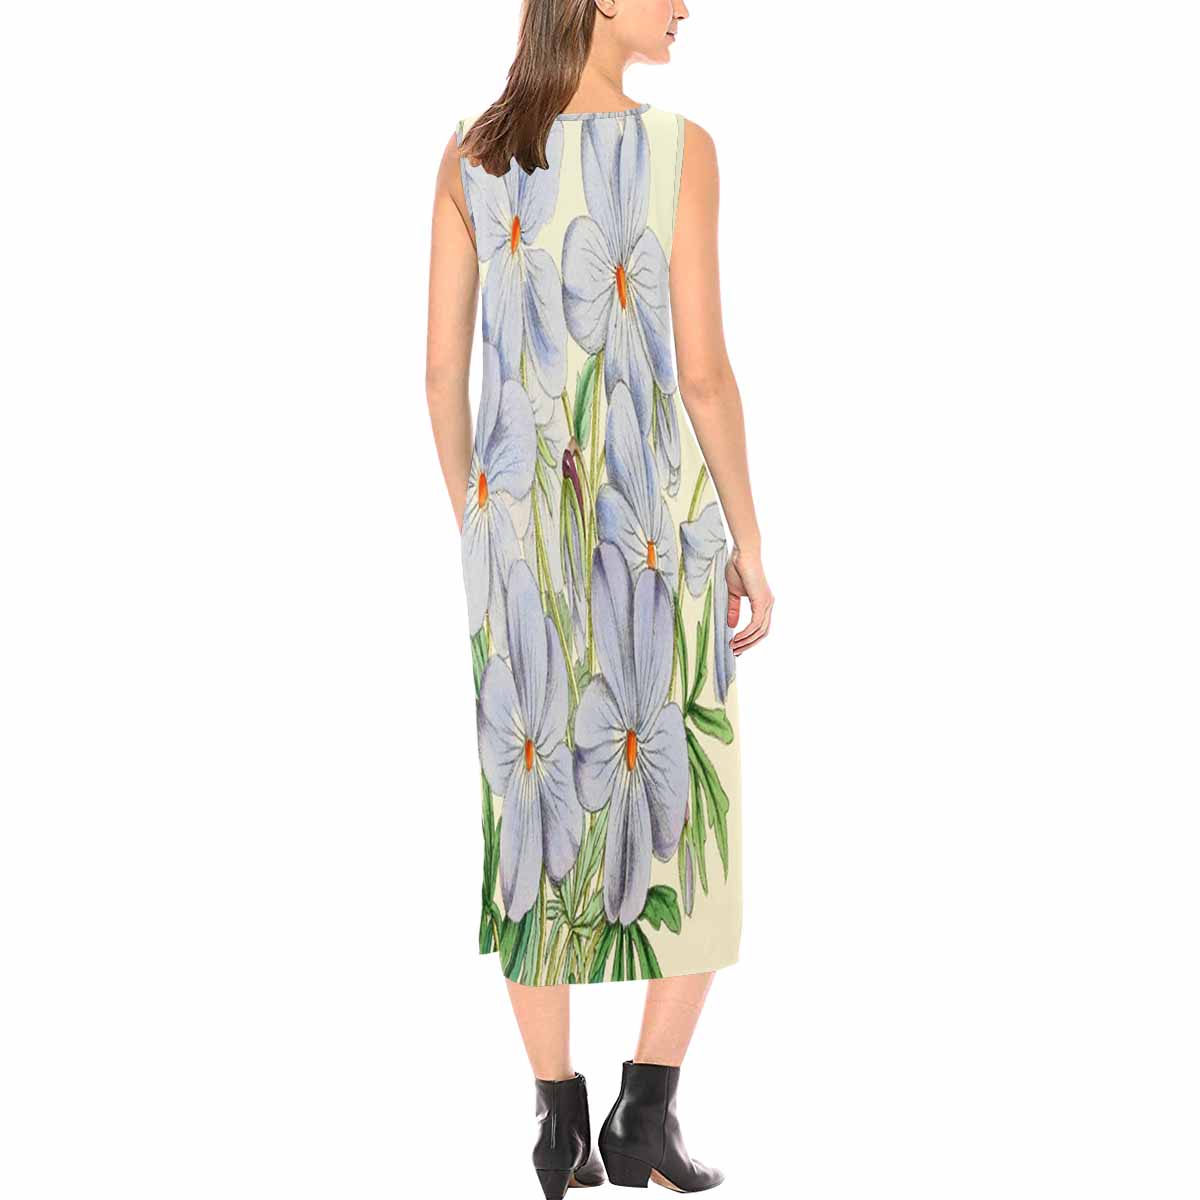 Vintage floral long dress, model D09538 Design 13